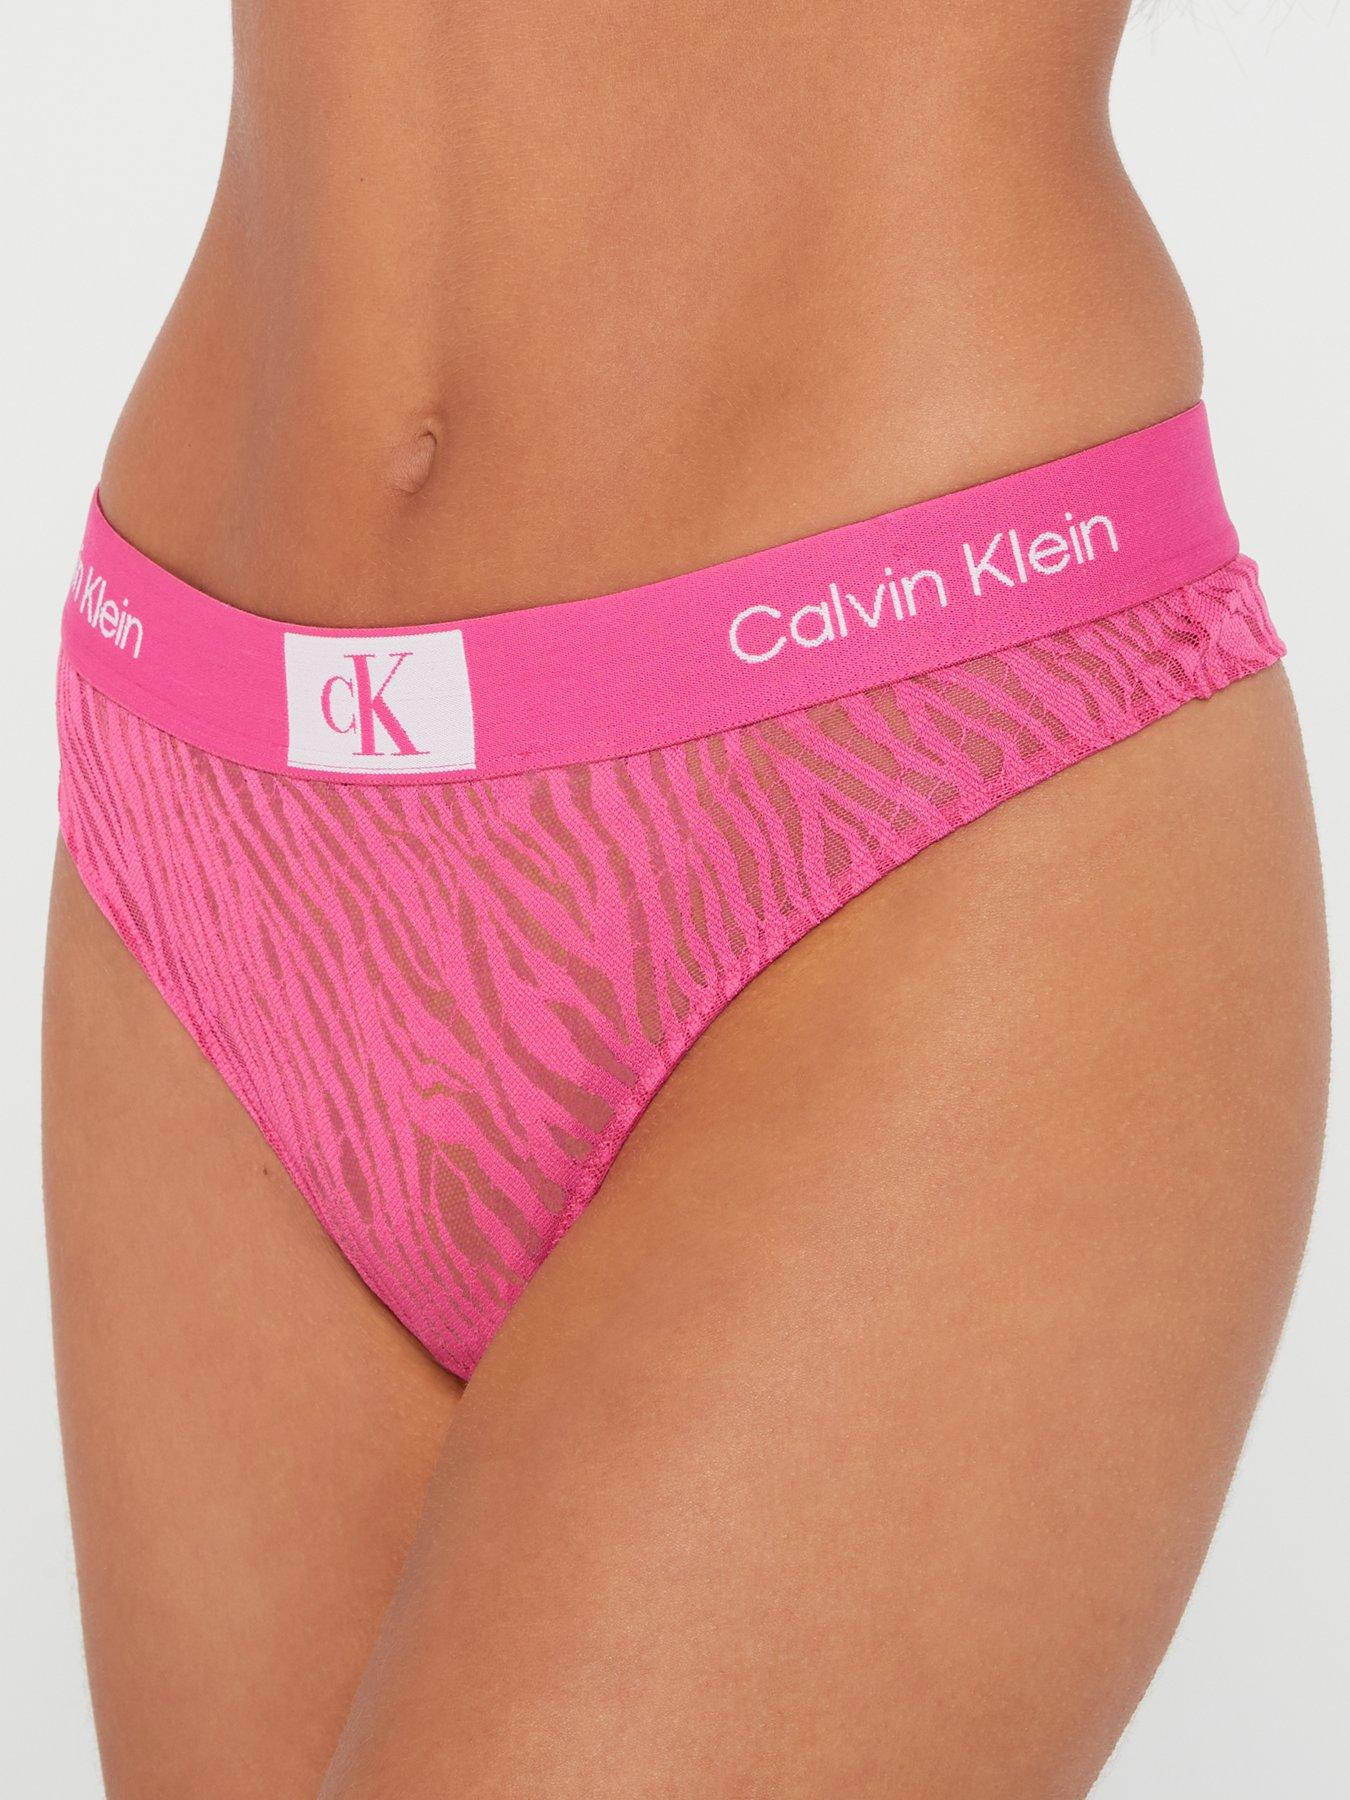 Calvin Klein 1996 Animal Lace Thong - Pink